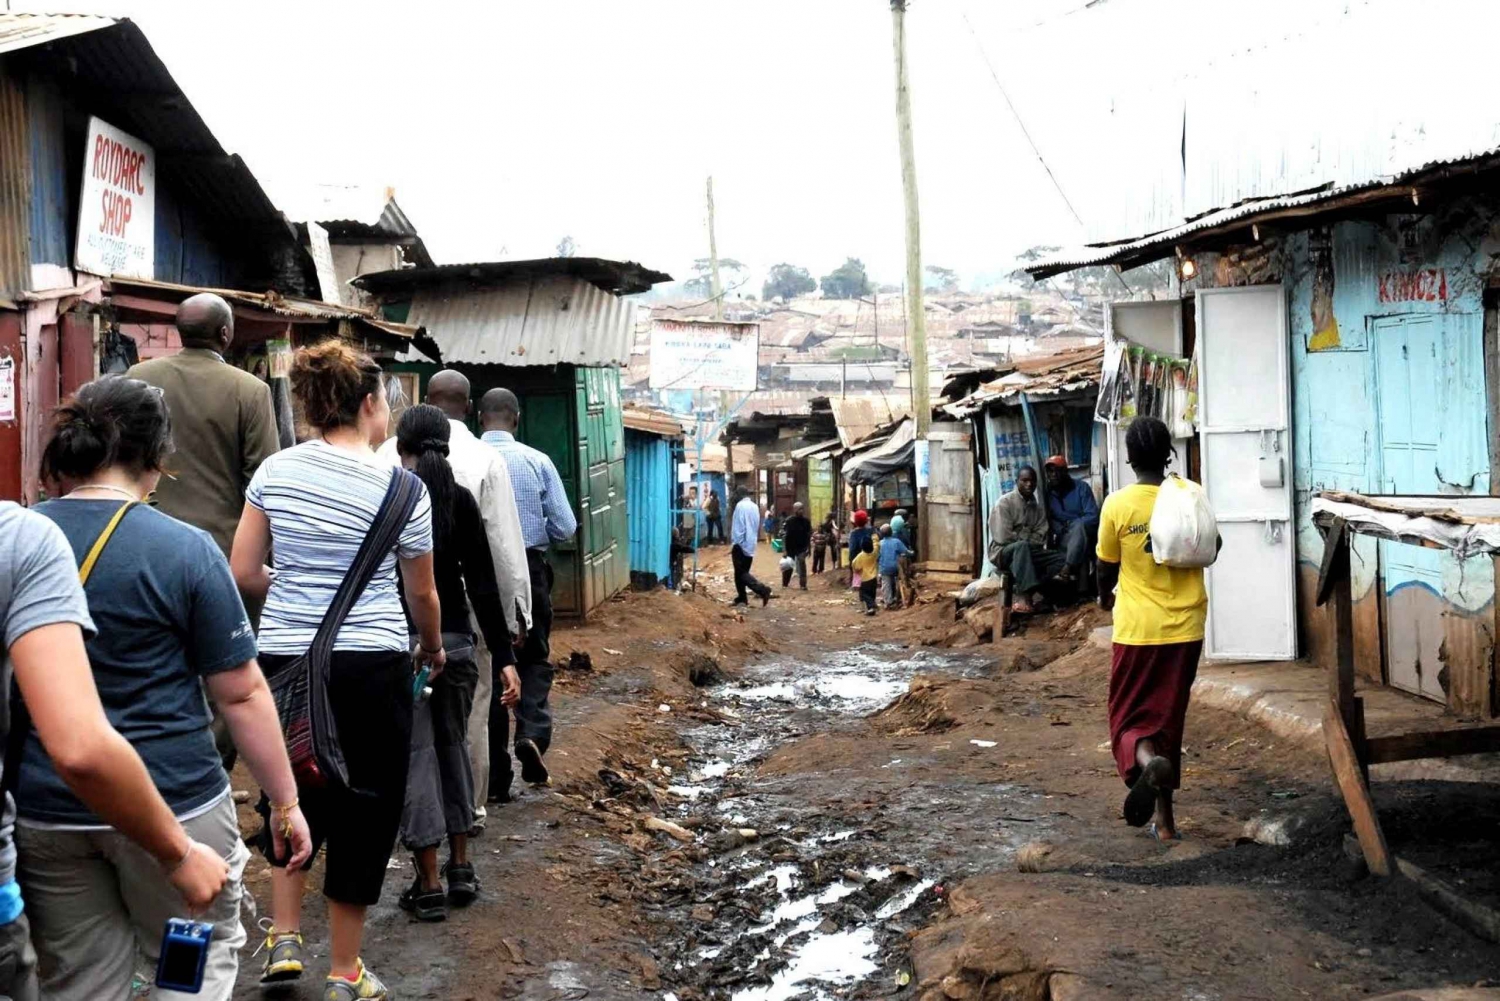 Passeio a pé pela favela de Kibera